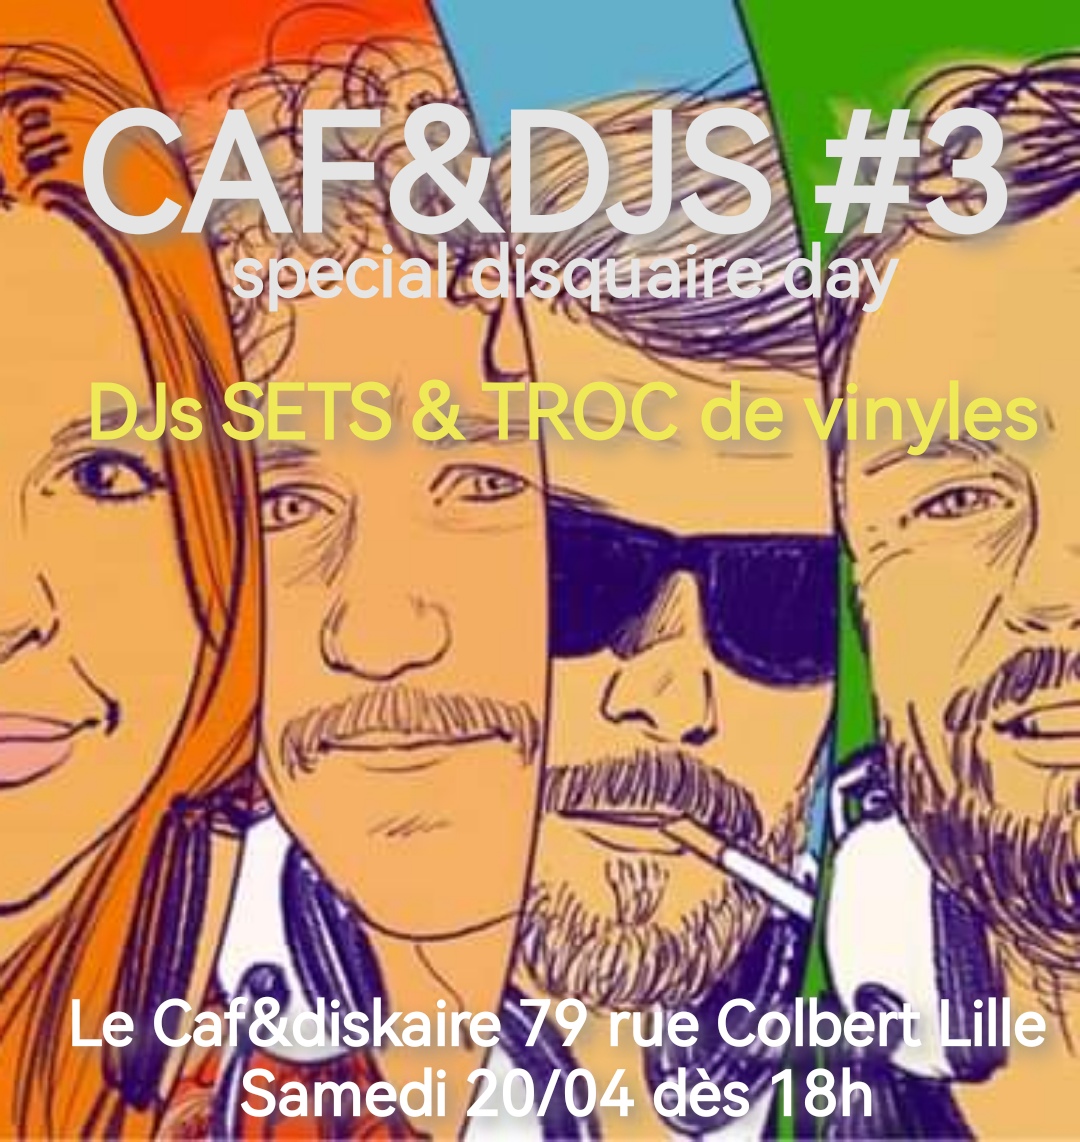 Caf&djs #3 : special disquaire day + troc de vinyles